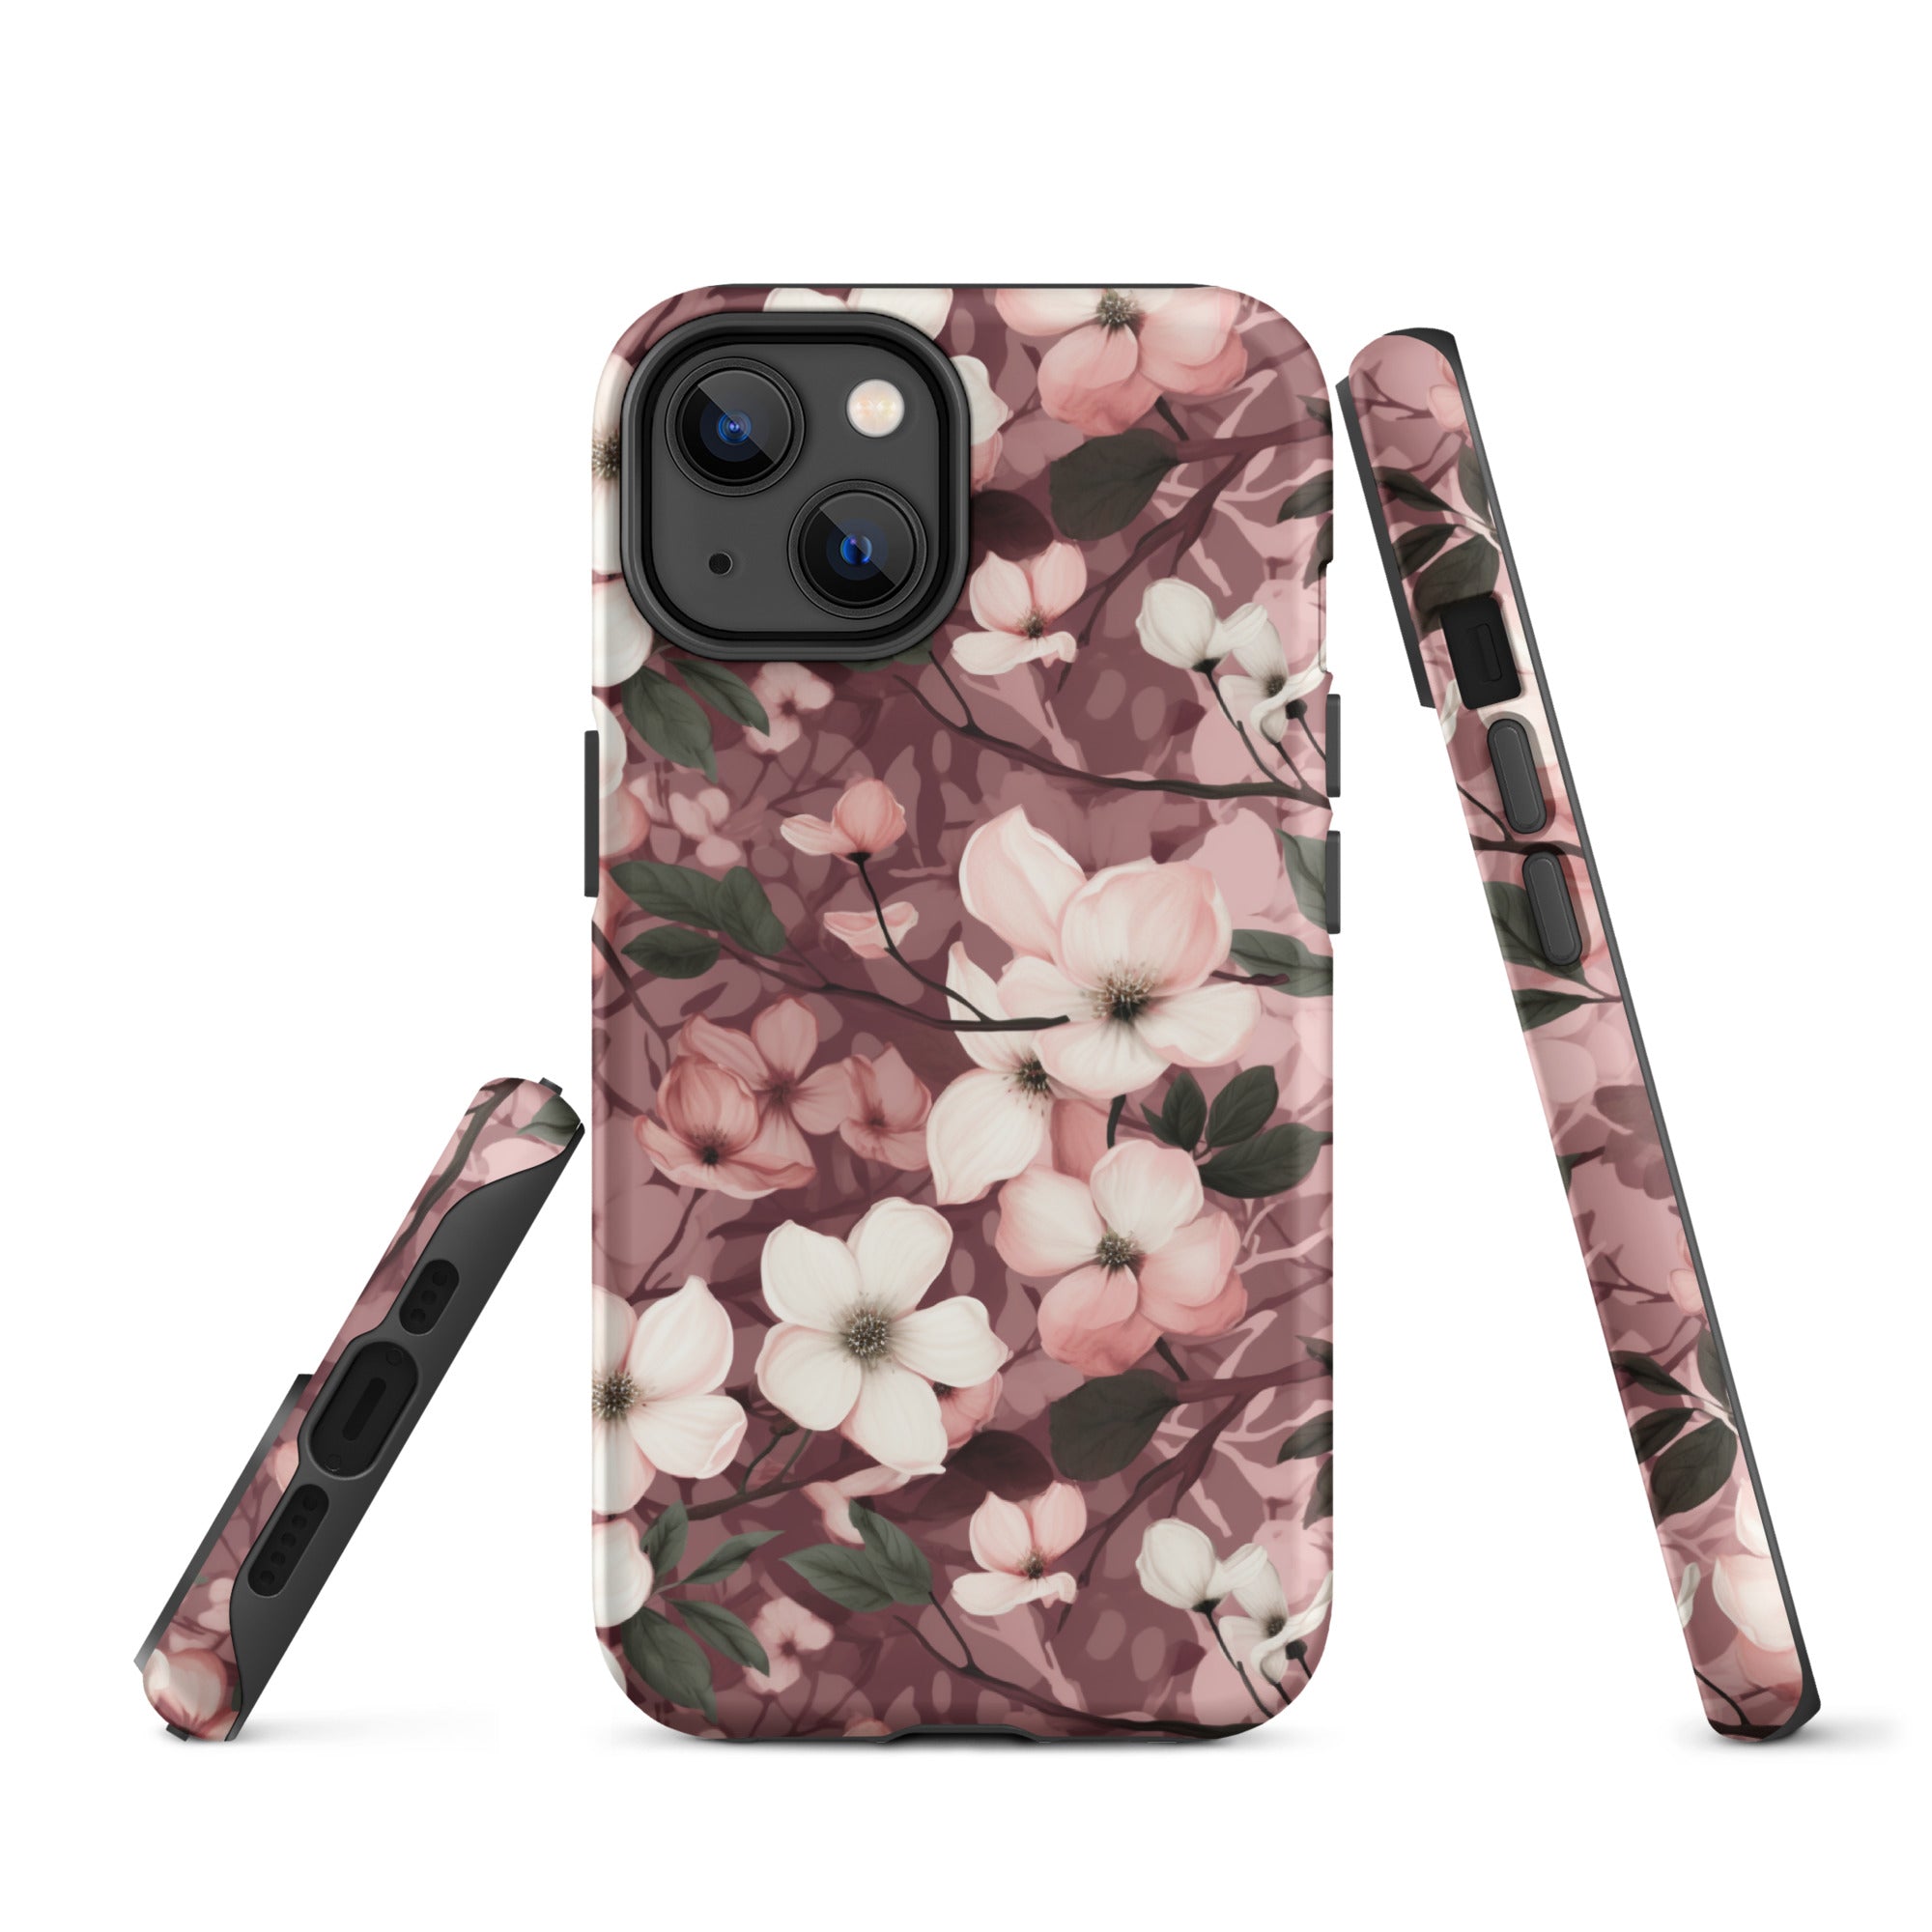 Sparse Dogwood Blossoms - Elegant Floral Design - iPhone Case - Pattern Symphony